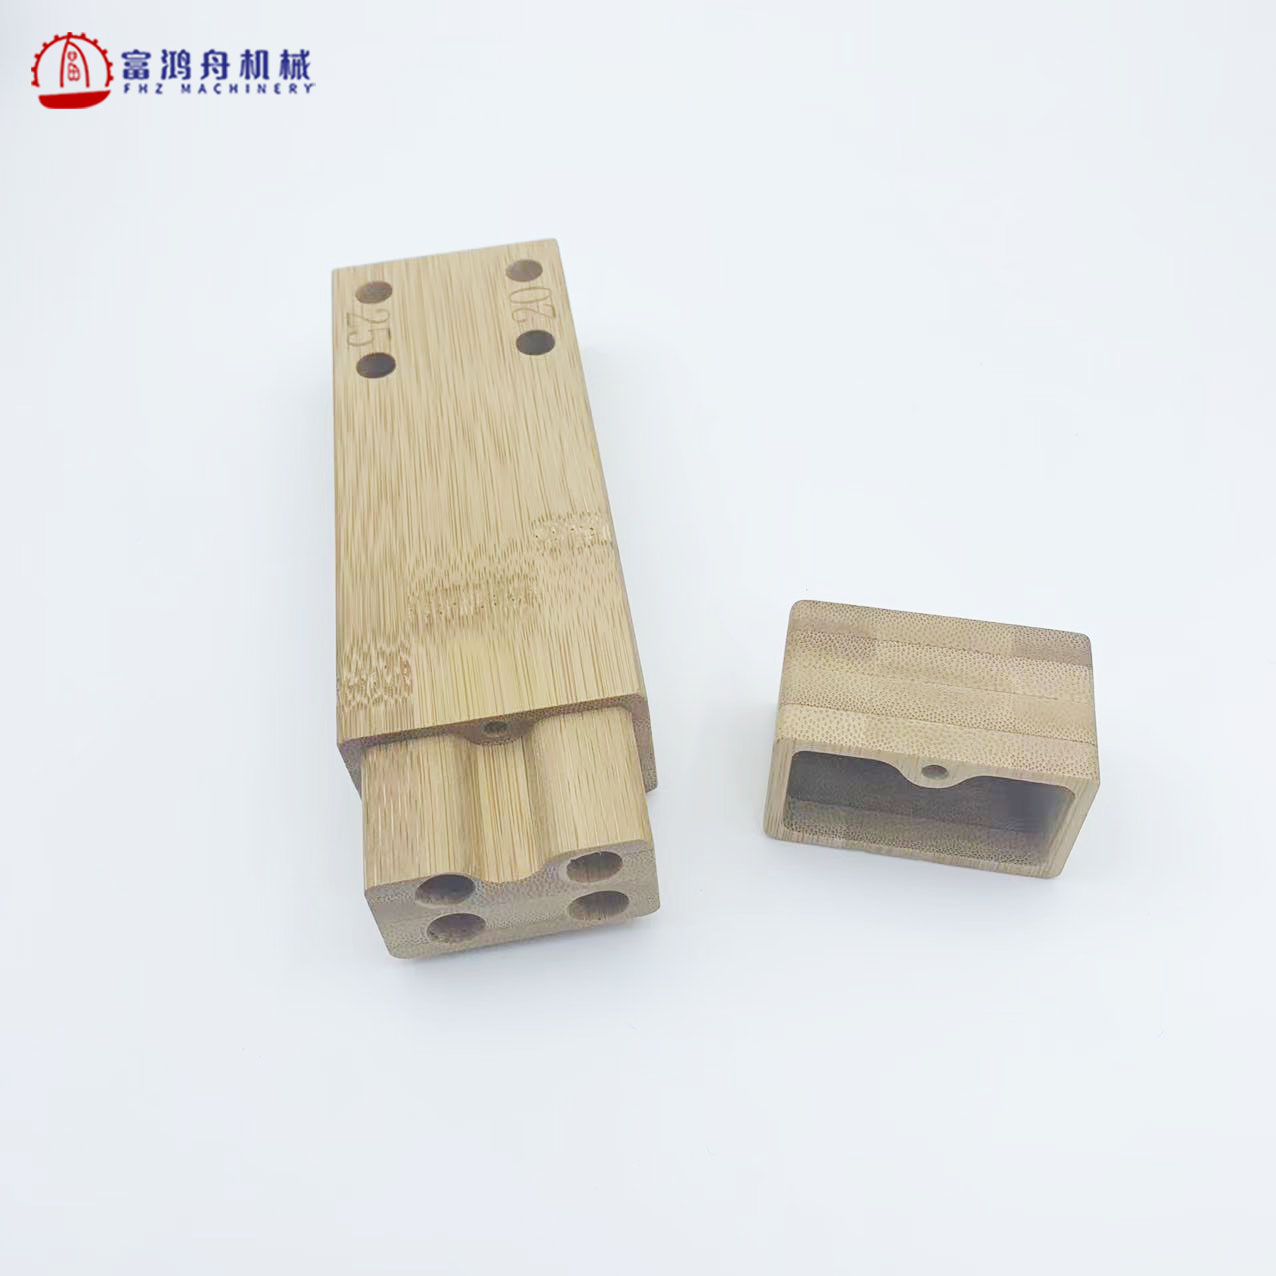 Ronda de madera de bambú sólida del abeto del pino de la nuez del arce del procesamiento de madera de encargo del CNC de madera de encargo